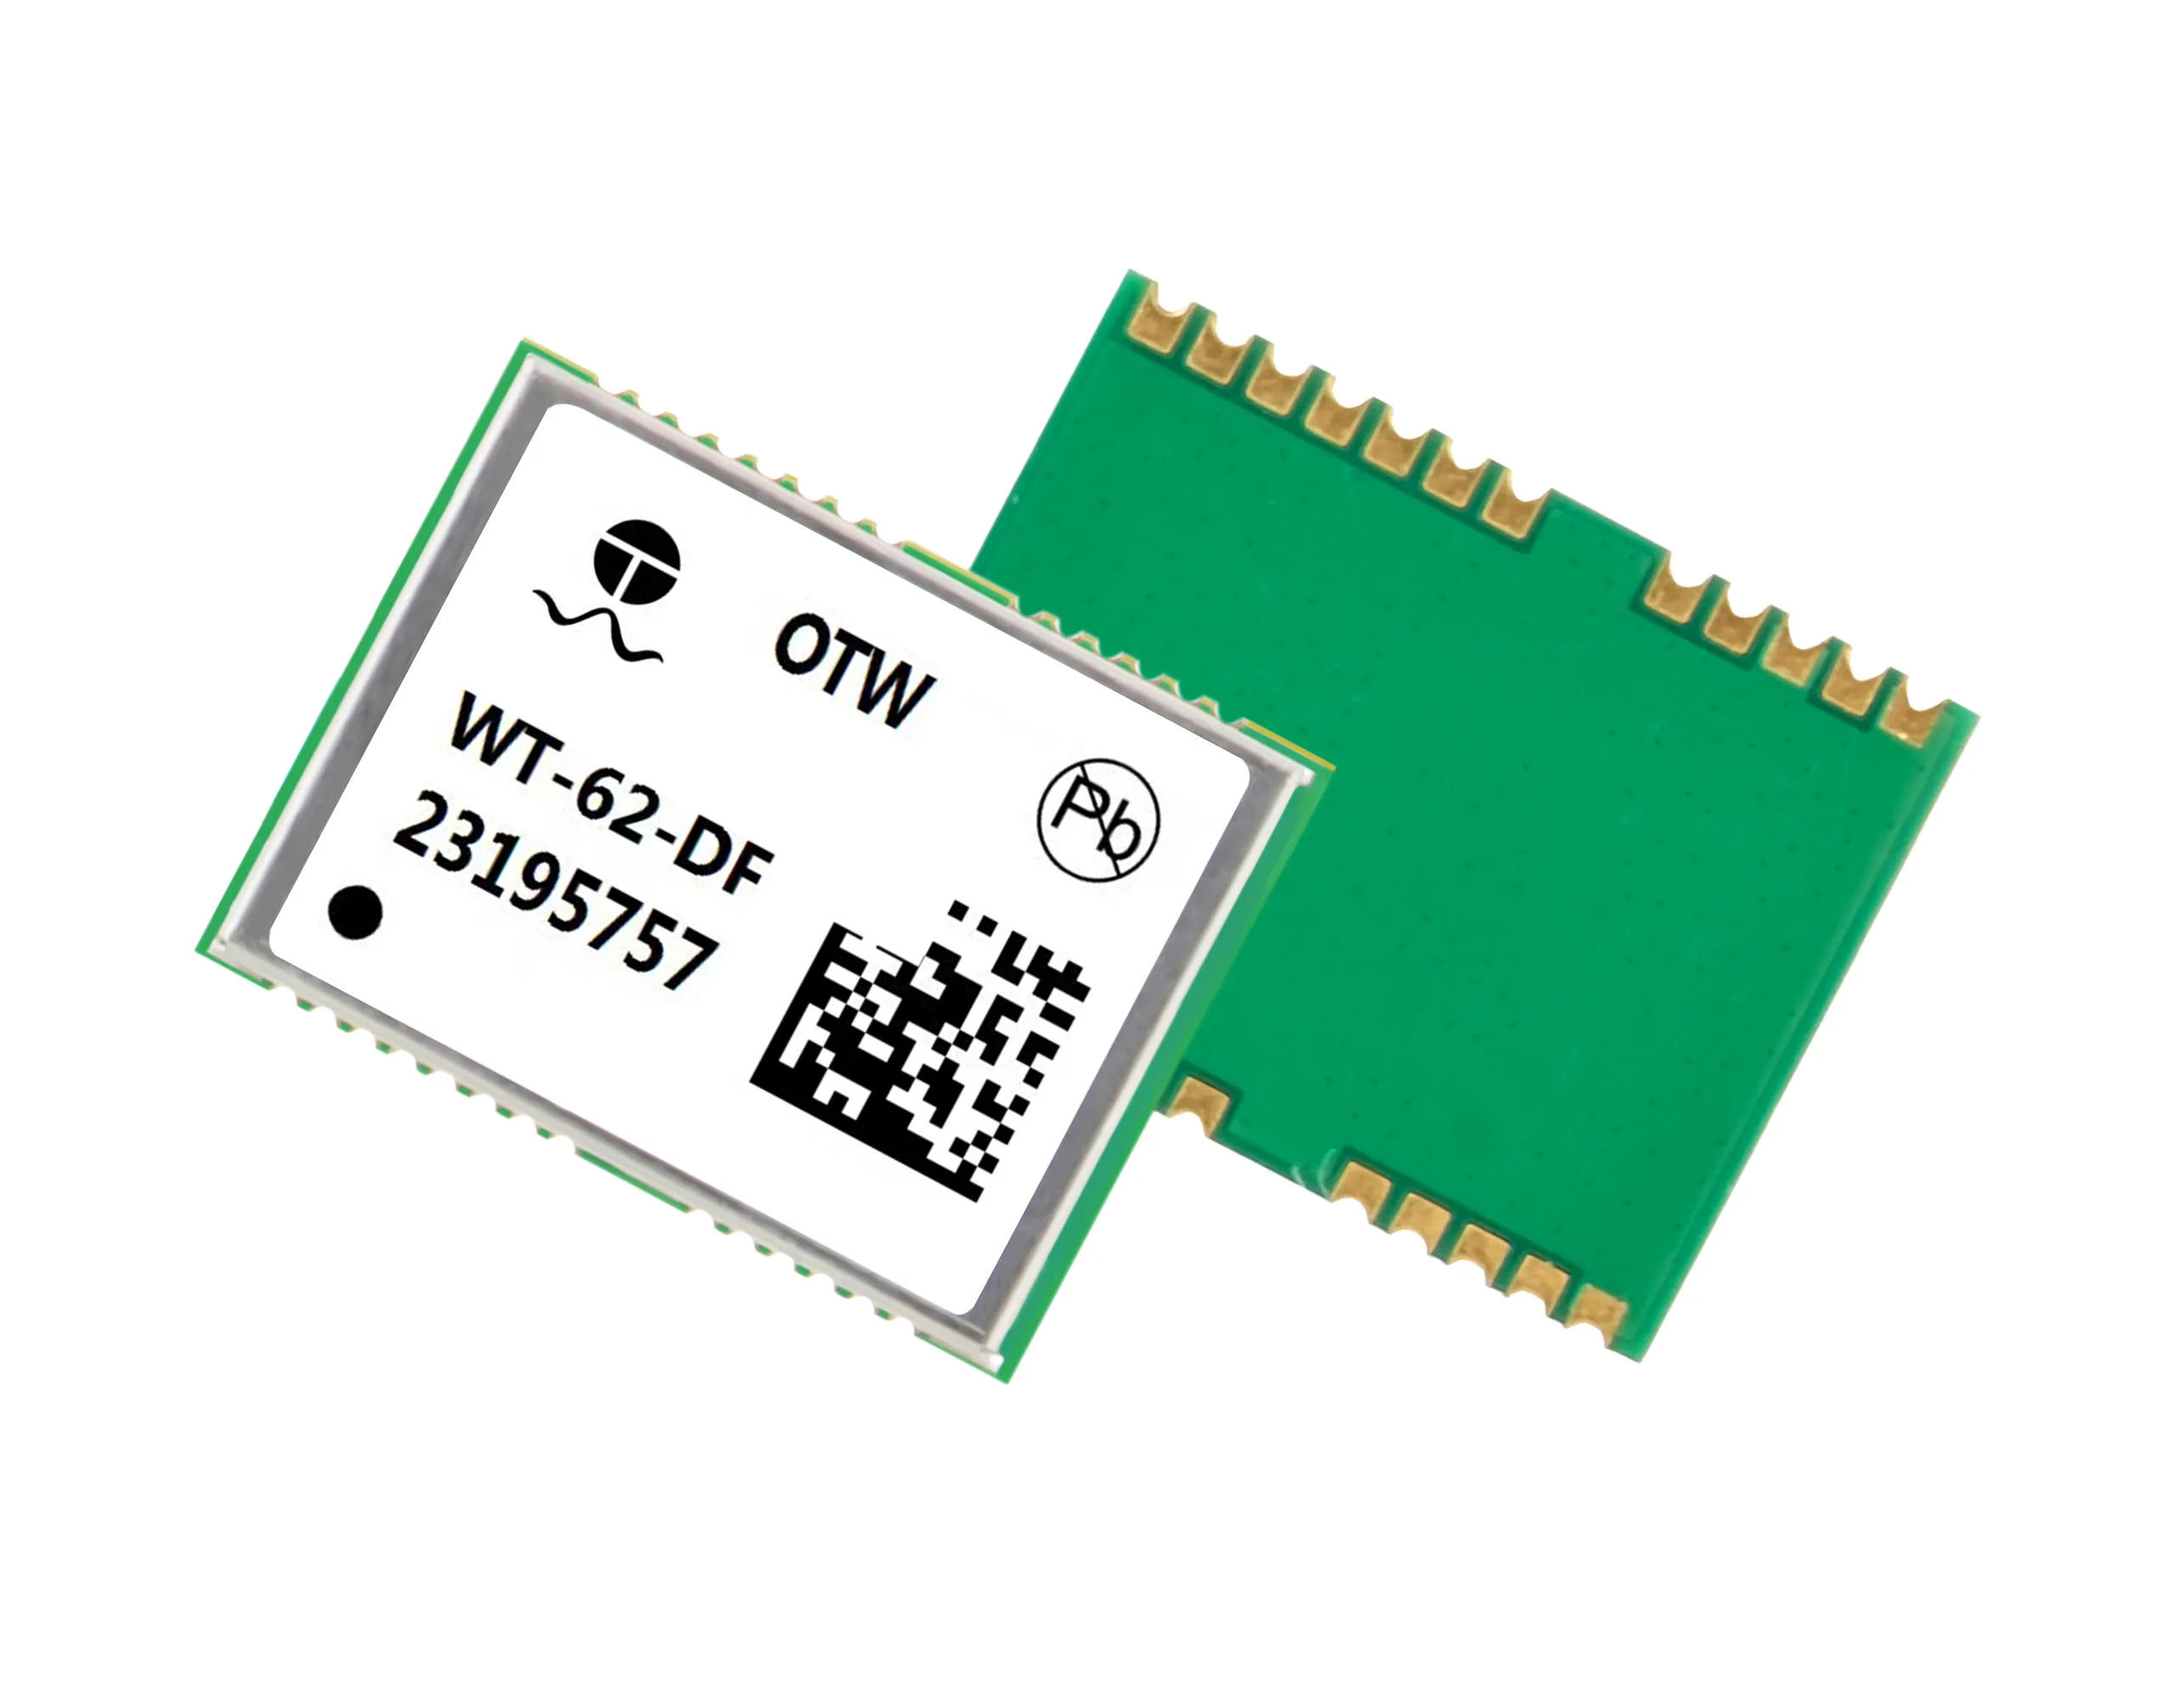 WT-62-DF modul pelacakan GPS konsumsi daya ultra-rendah Chip lokasi GNSS terkecil untuk pelacakan kendaraan yang efisien